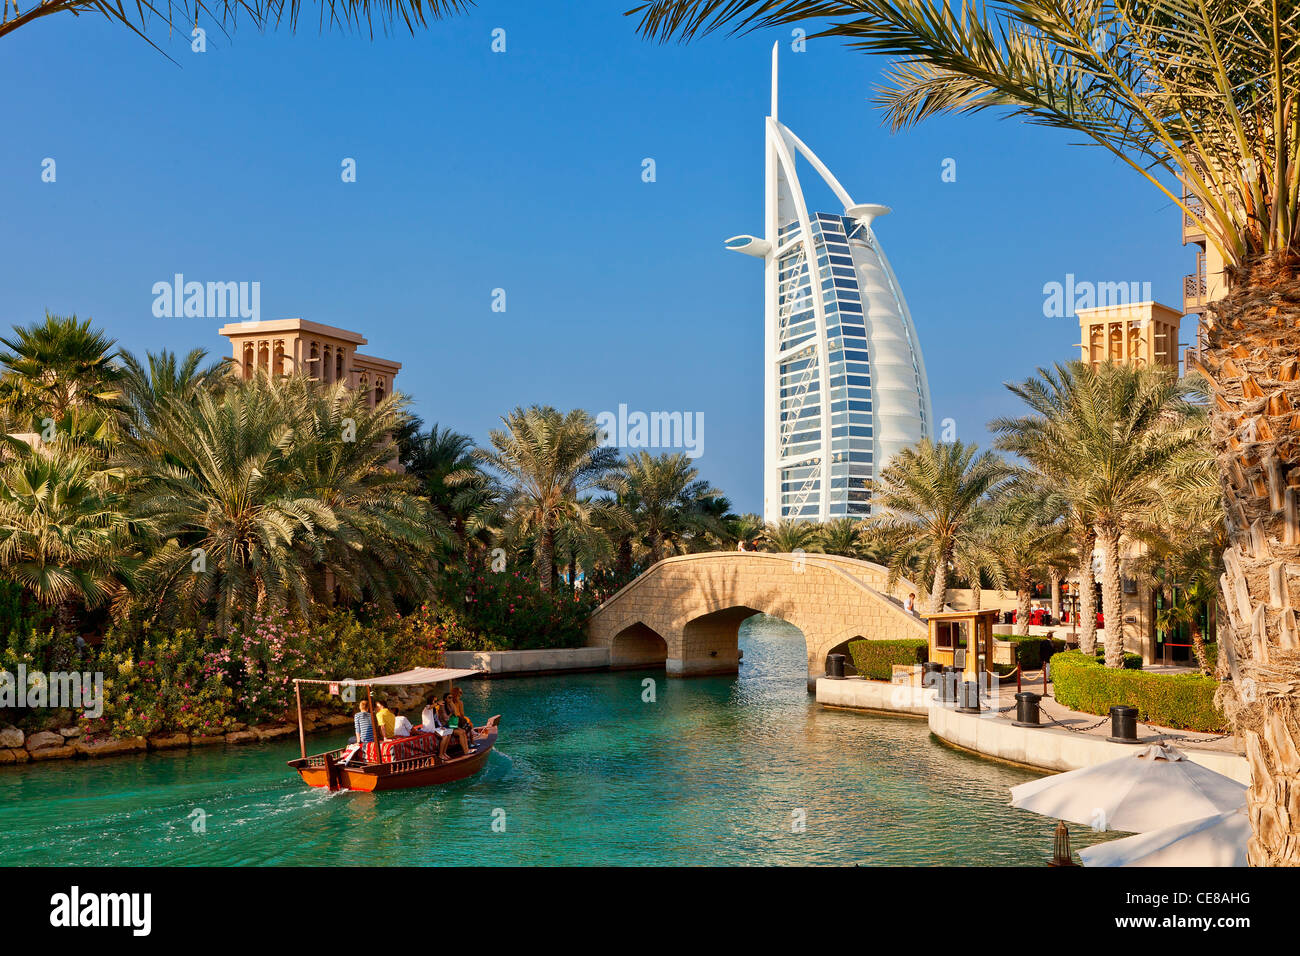 Asia, Arabia, Dubai Emirate, Dubai, Madinat Jumeirah and the Burj al Arab Hotel Stock Photo